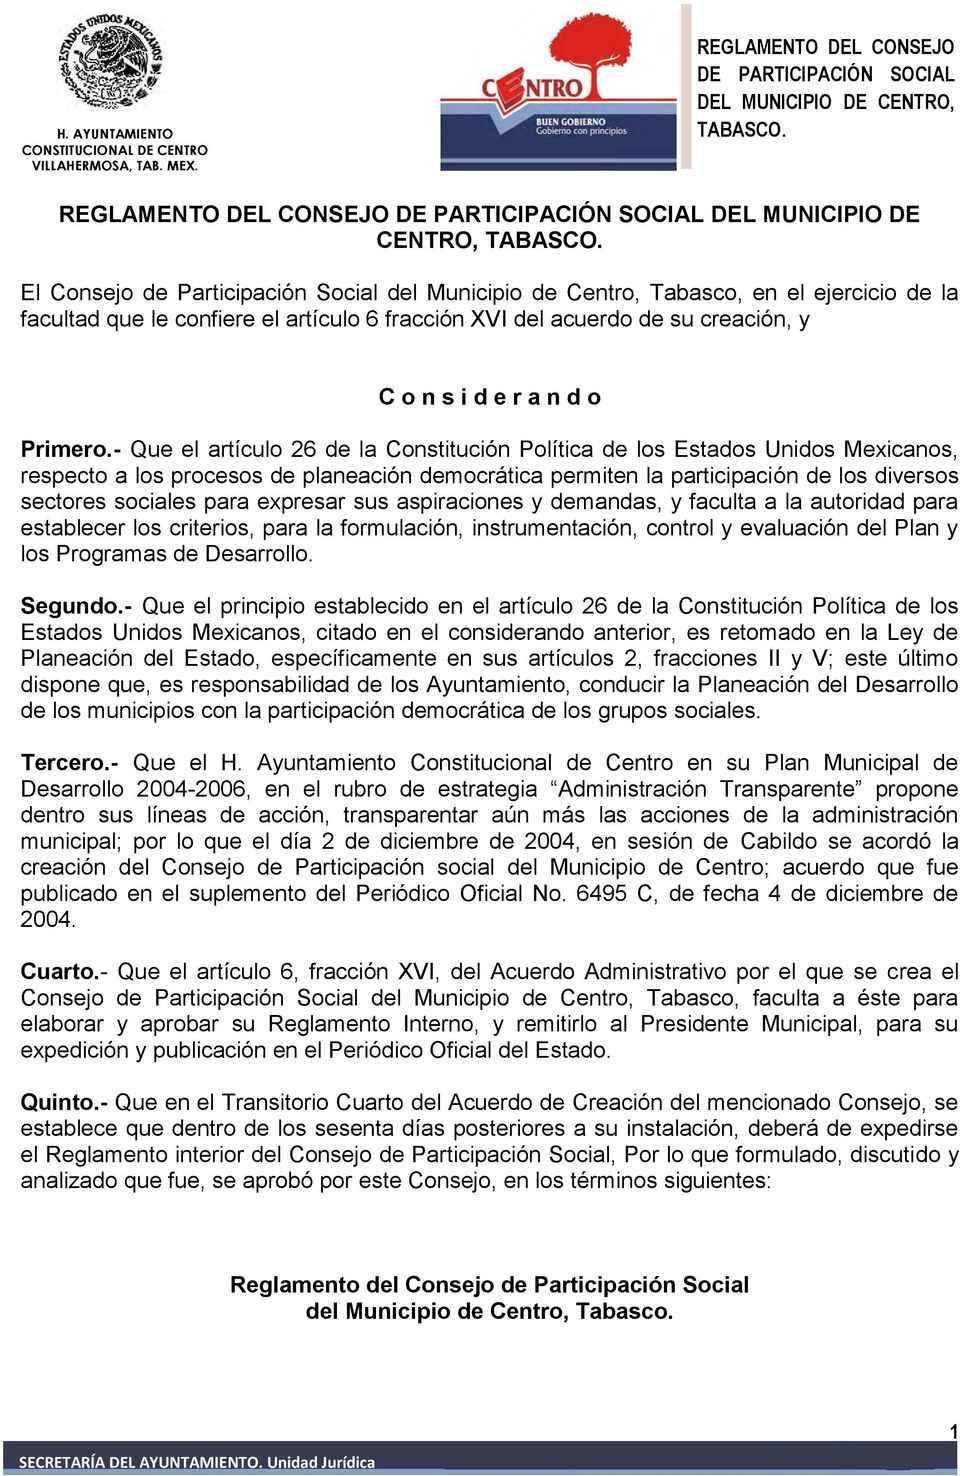 - Que el artículo 26 de la Constitución Política de los Estados Unidos Mexicanos, respecto a los procesos de planeación democrática permiten la participación de los diversos sectores sociales para